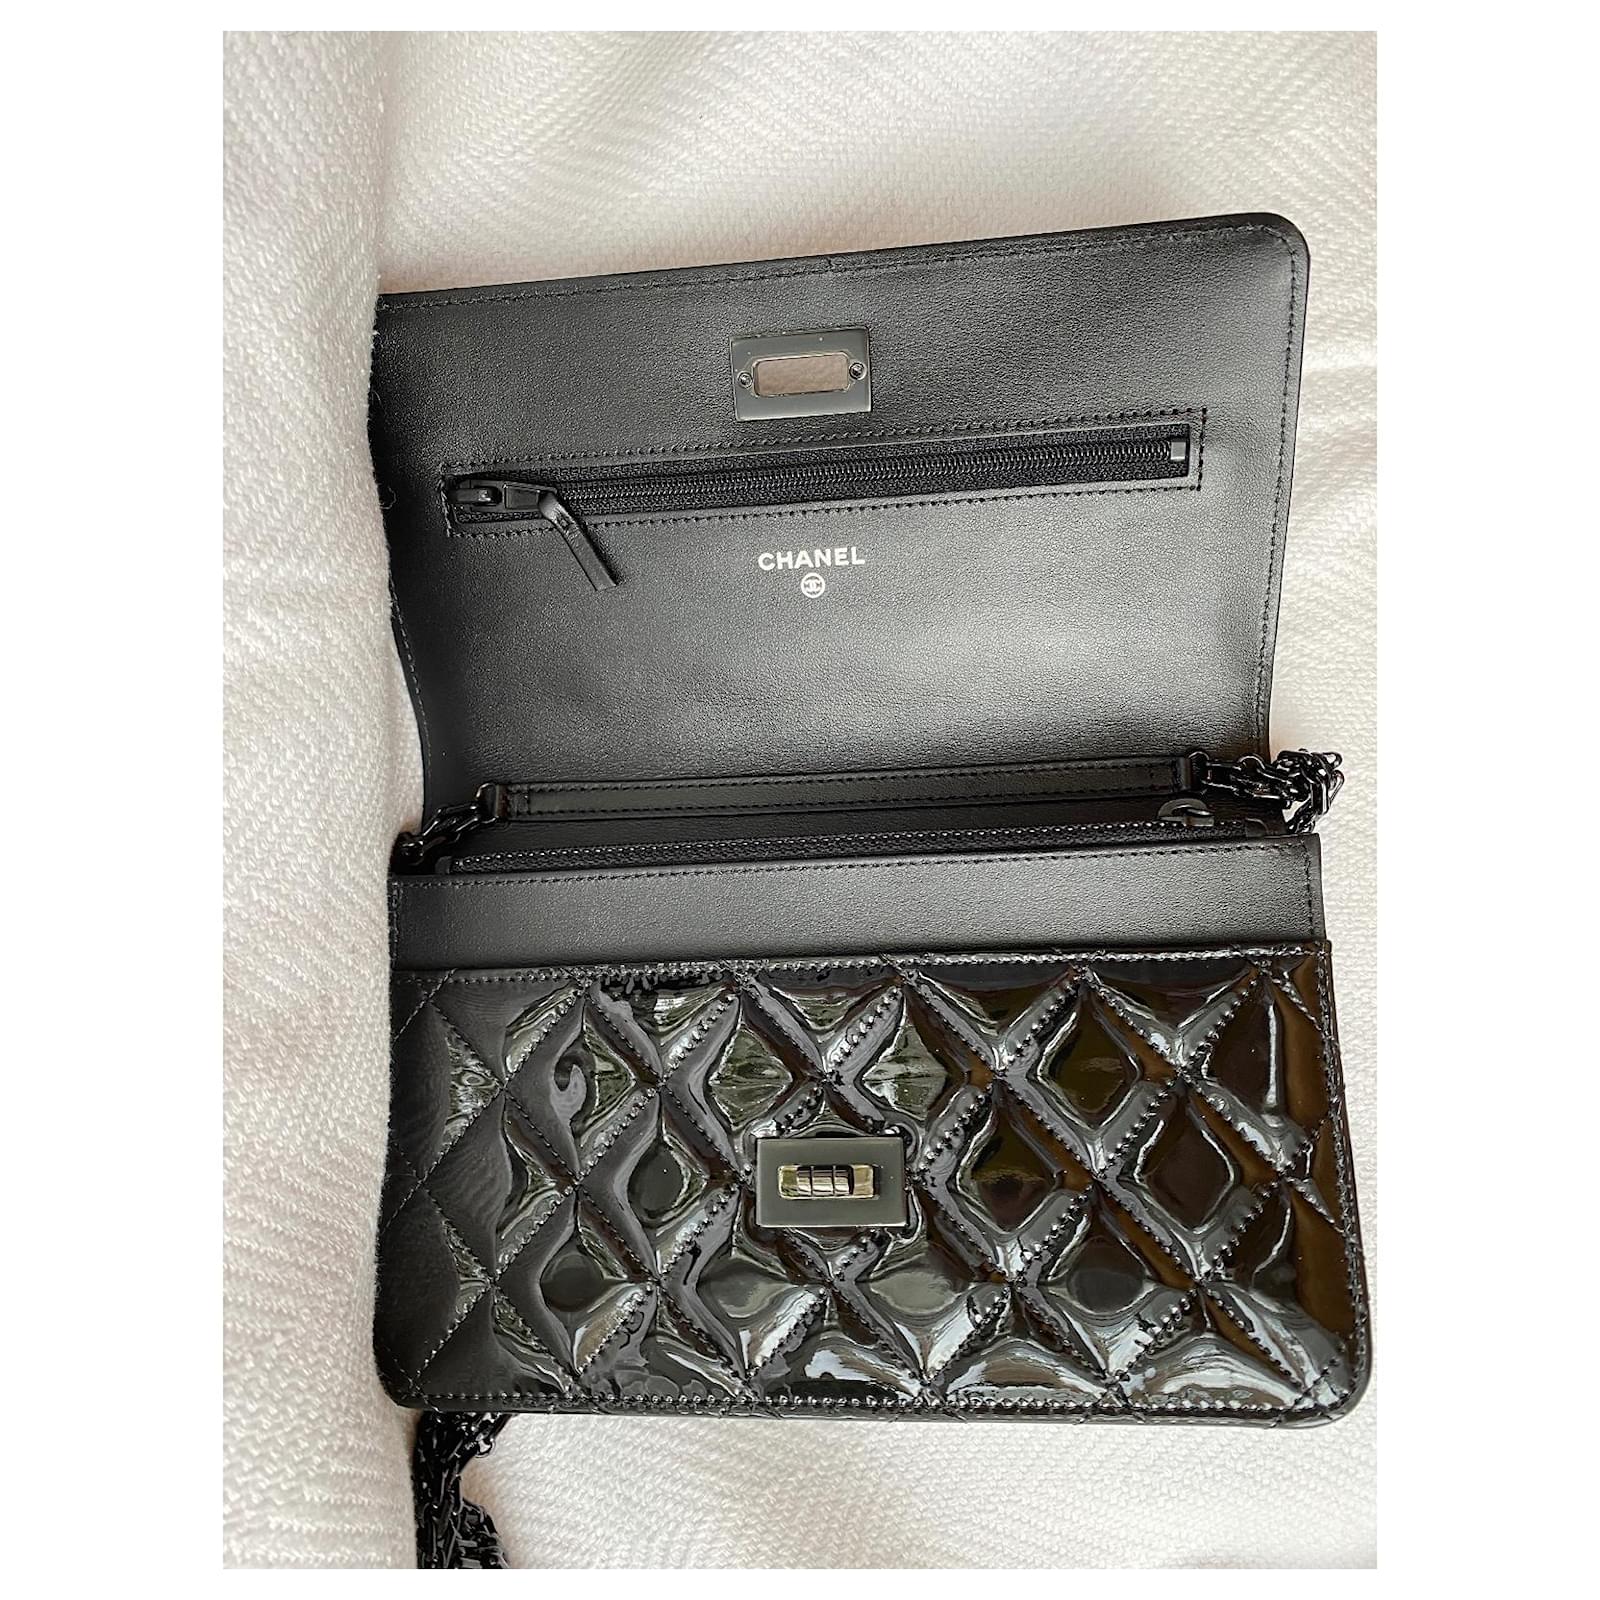 Clutch Bags Chanel Woc 2.55